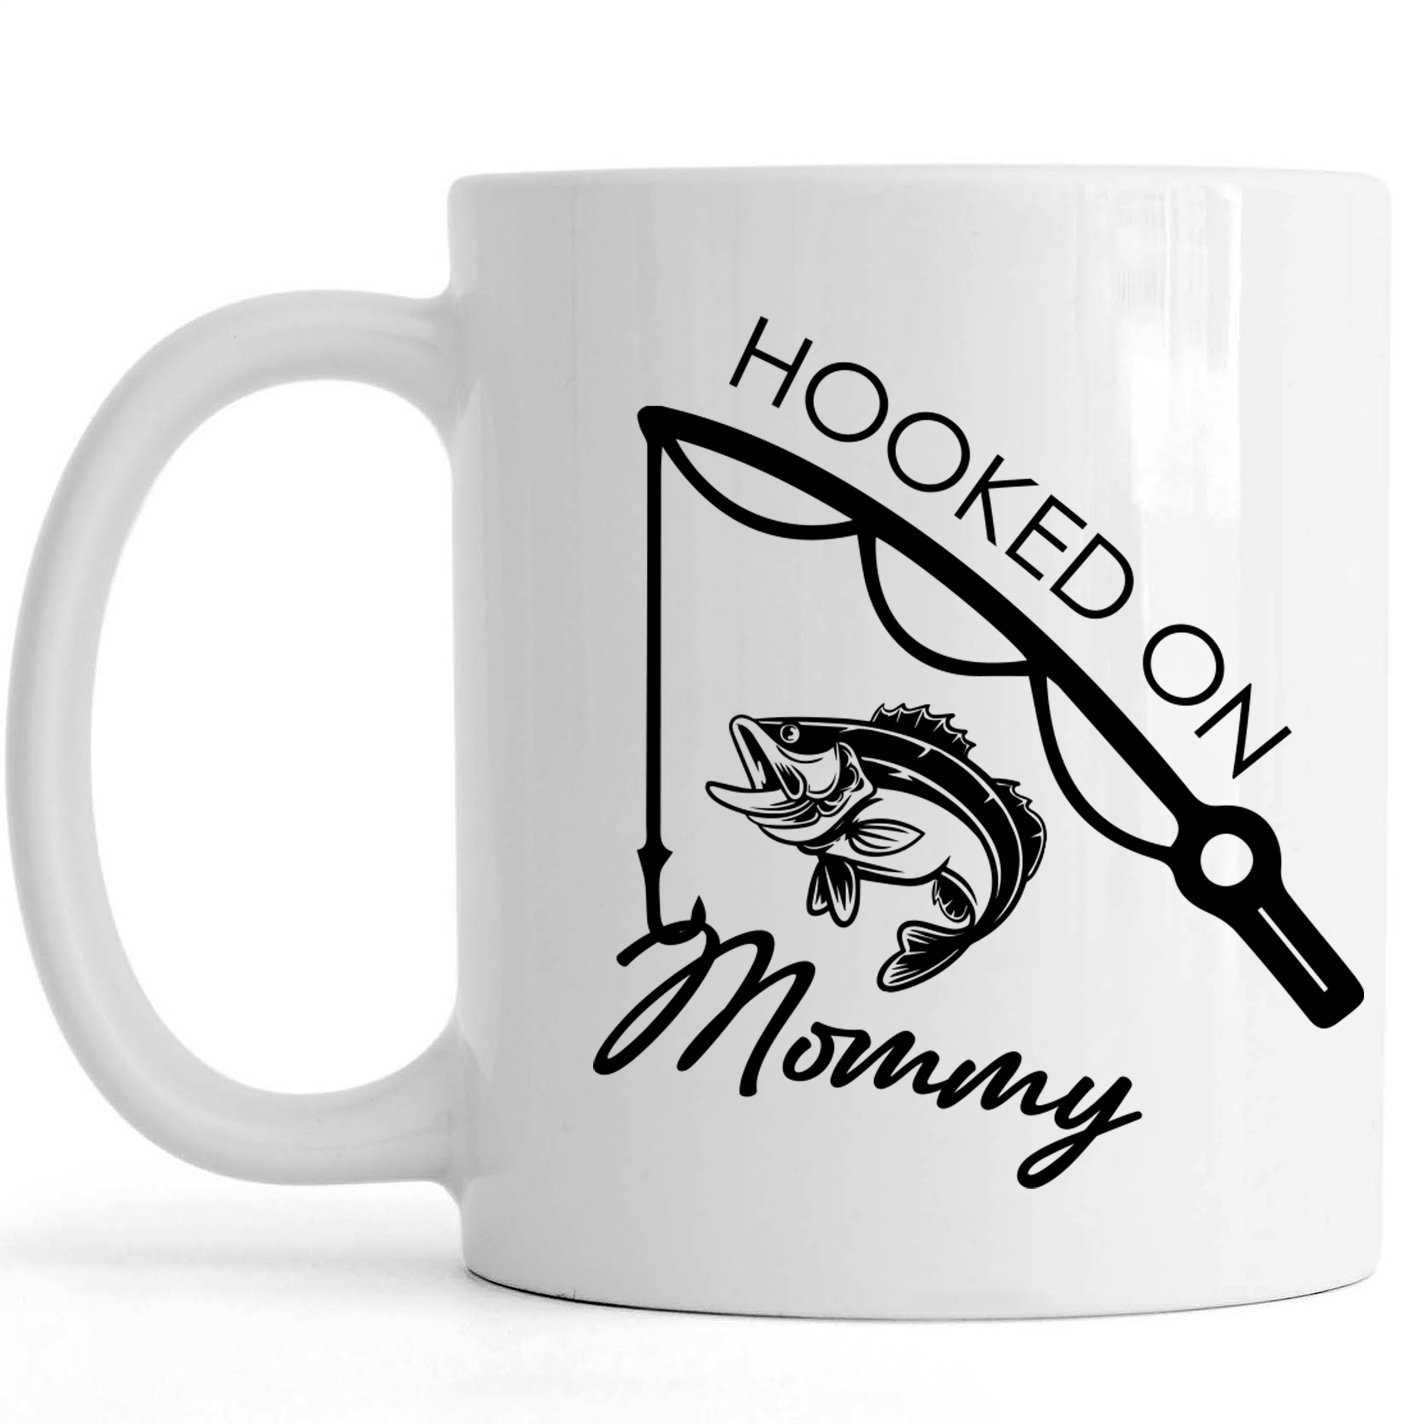 Hooked on Mommy Cute Mug | Funny Mom Mug, Fishing Mug for New Mom, First Mother’s Day Gift, Mom Life Fishing Mug | N1244 ChipteeAmz